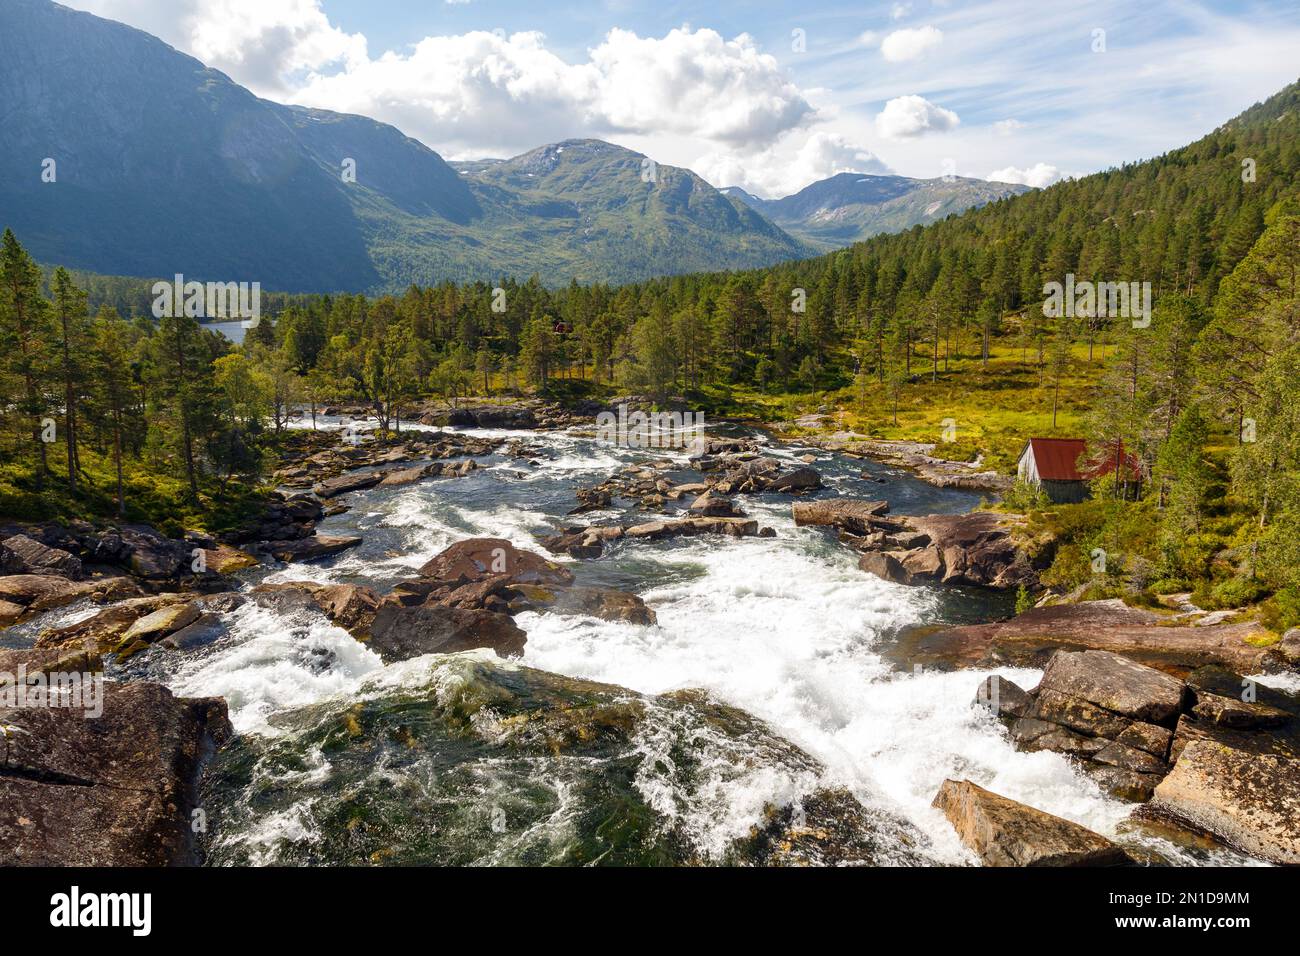 Der Fluss vom Wasserfall Likholefossen in der Gemeinde Gaular, Norwegen Banque D'Images